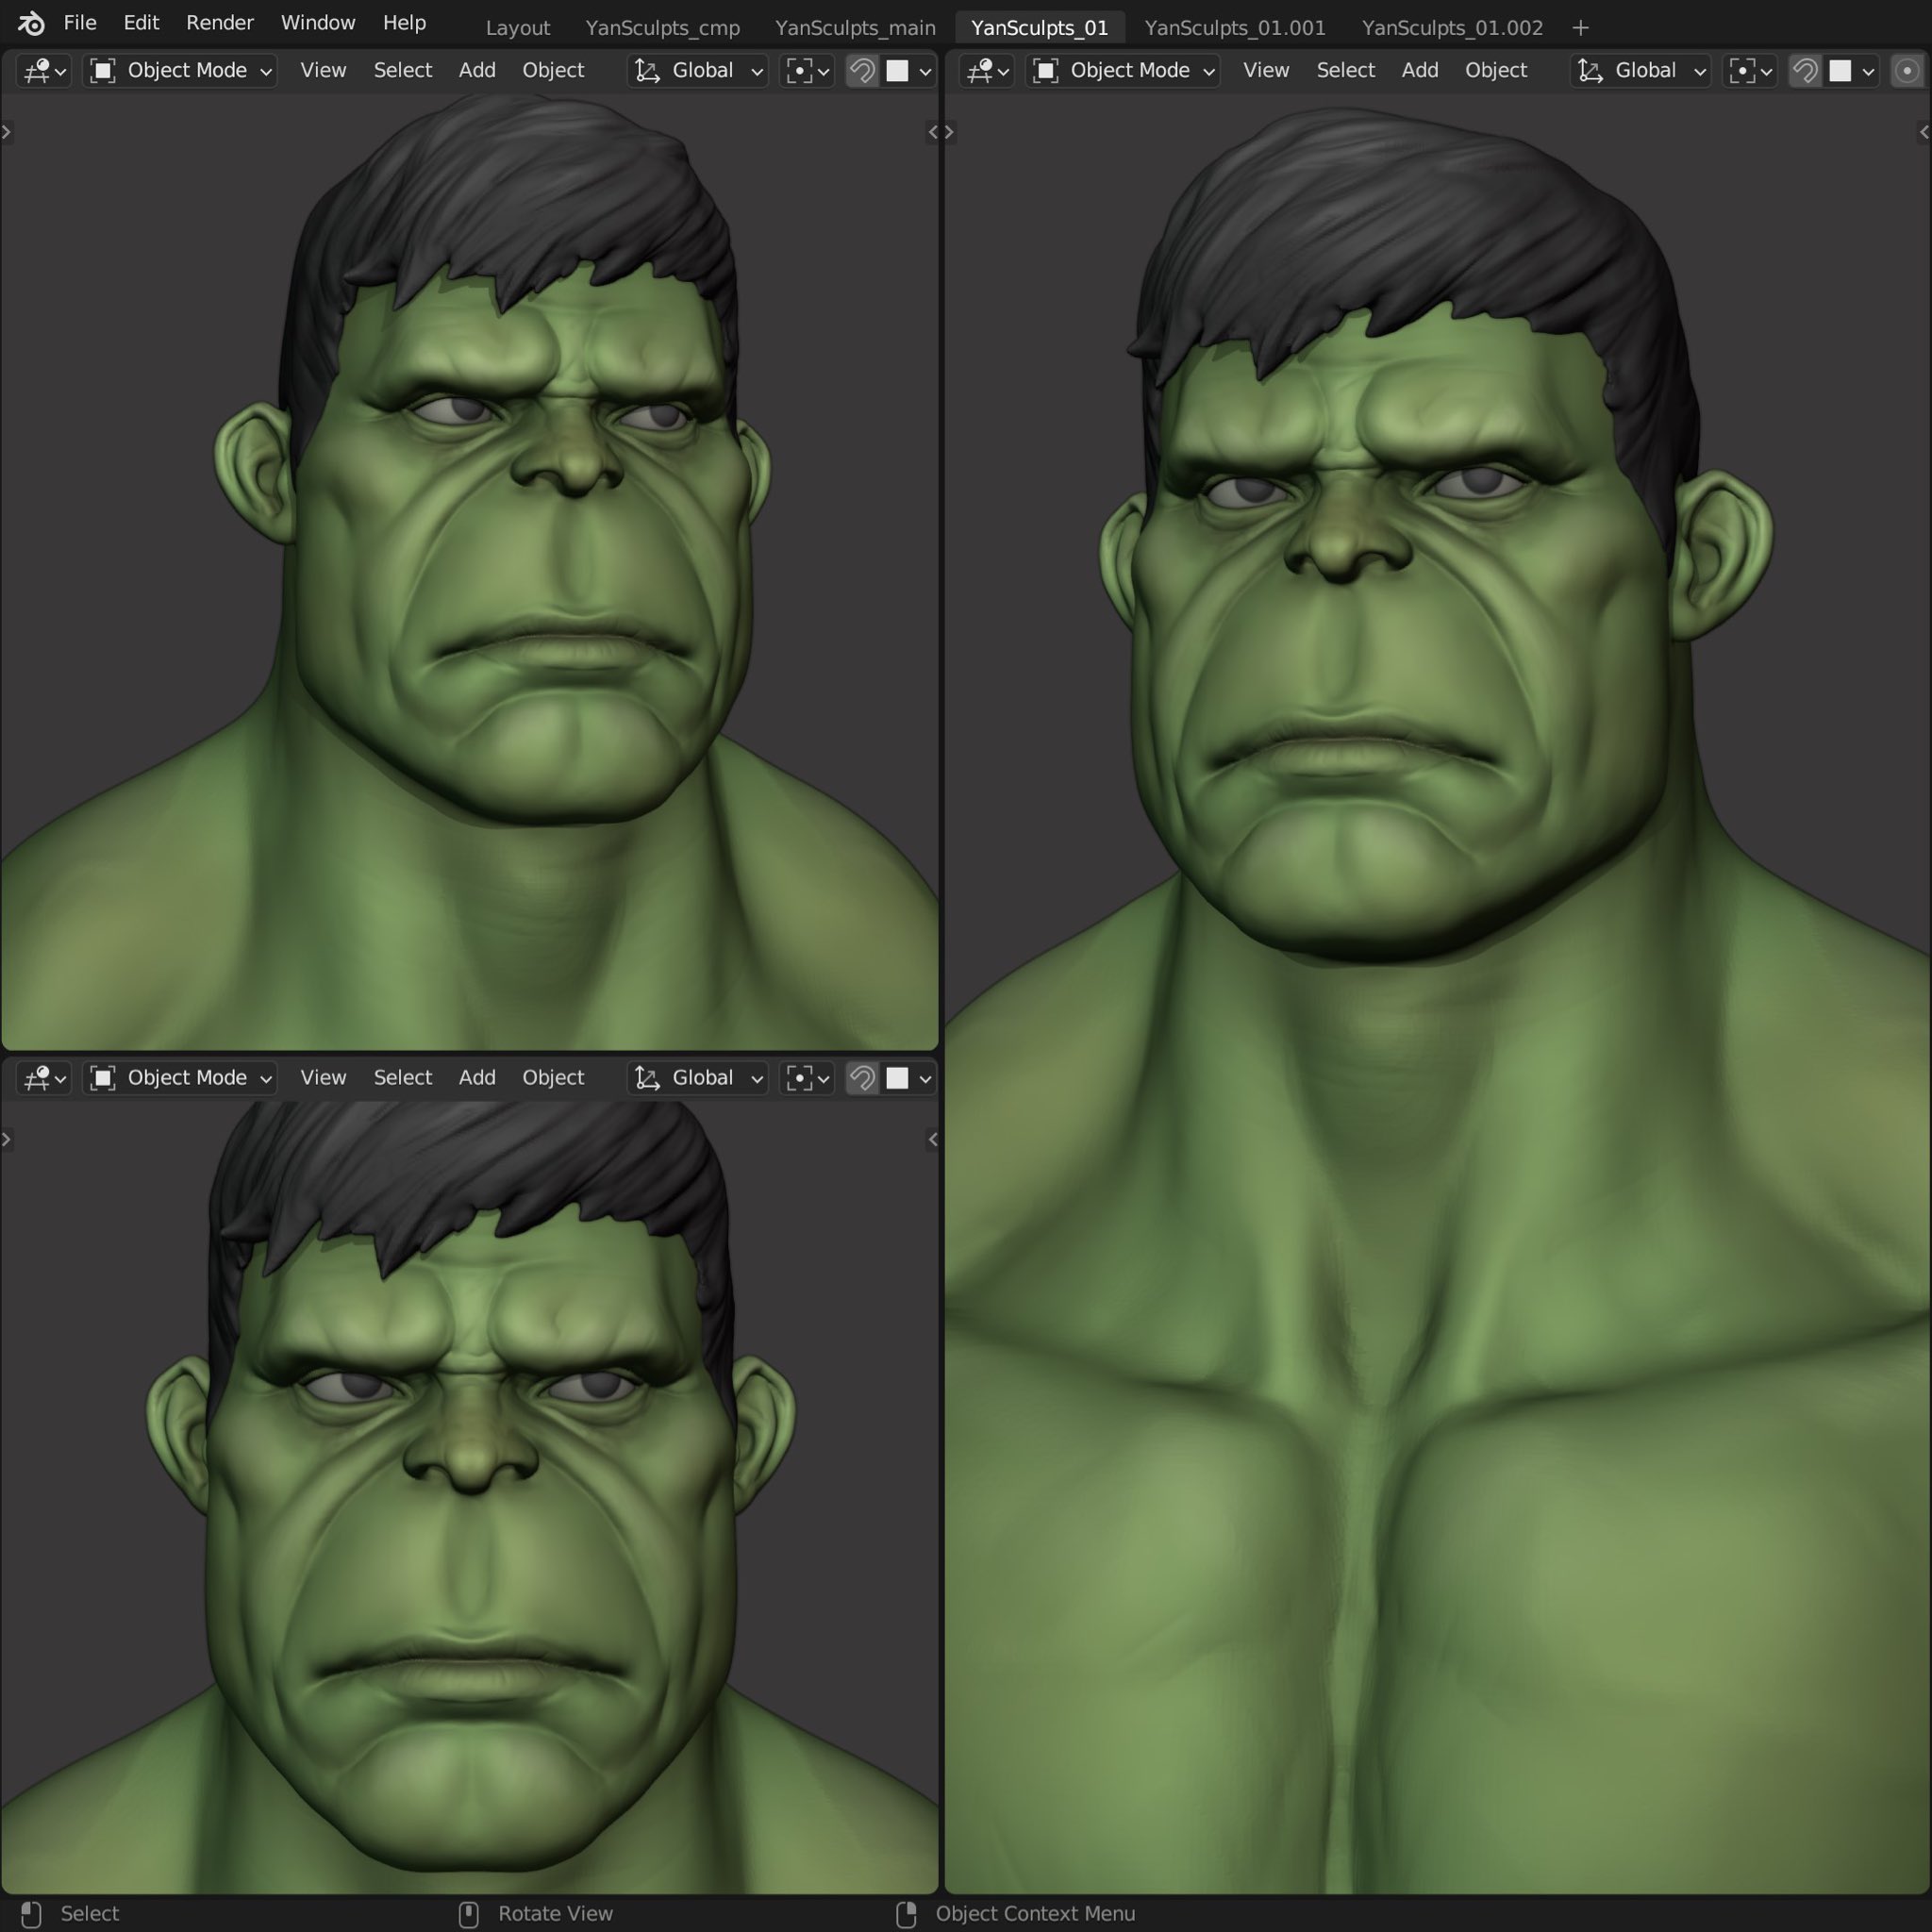 Angry Hulk Cartoon Head from Marvel 💚👊